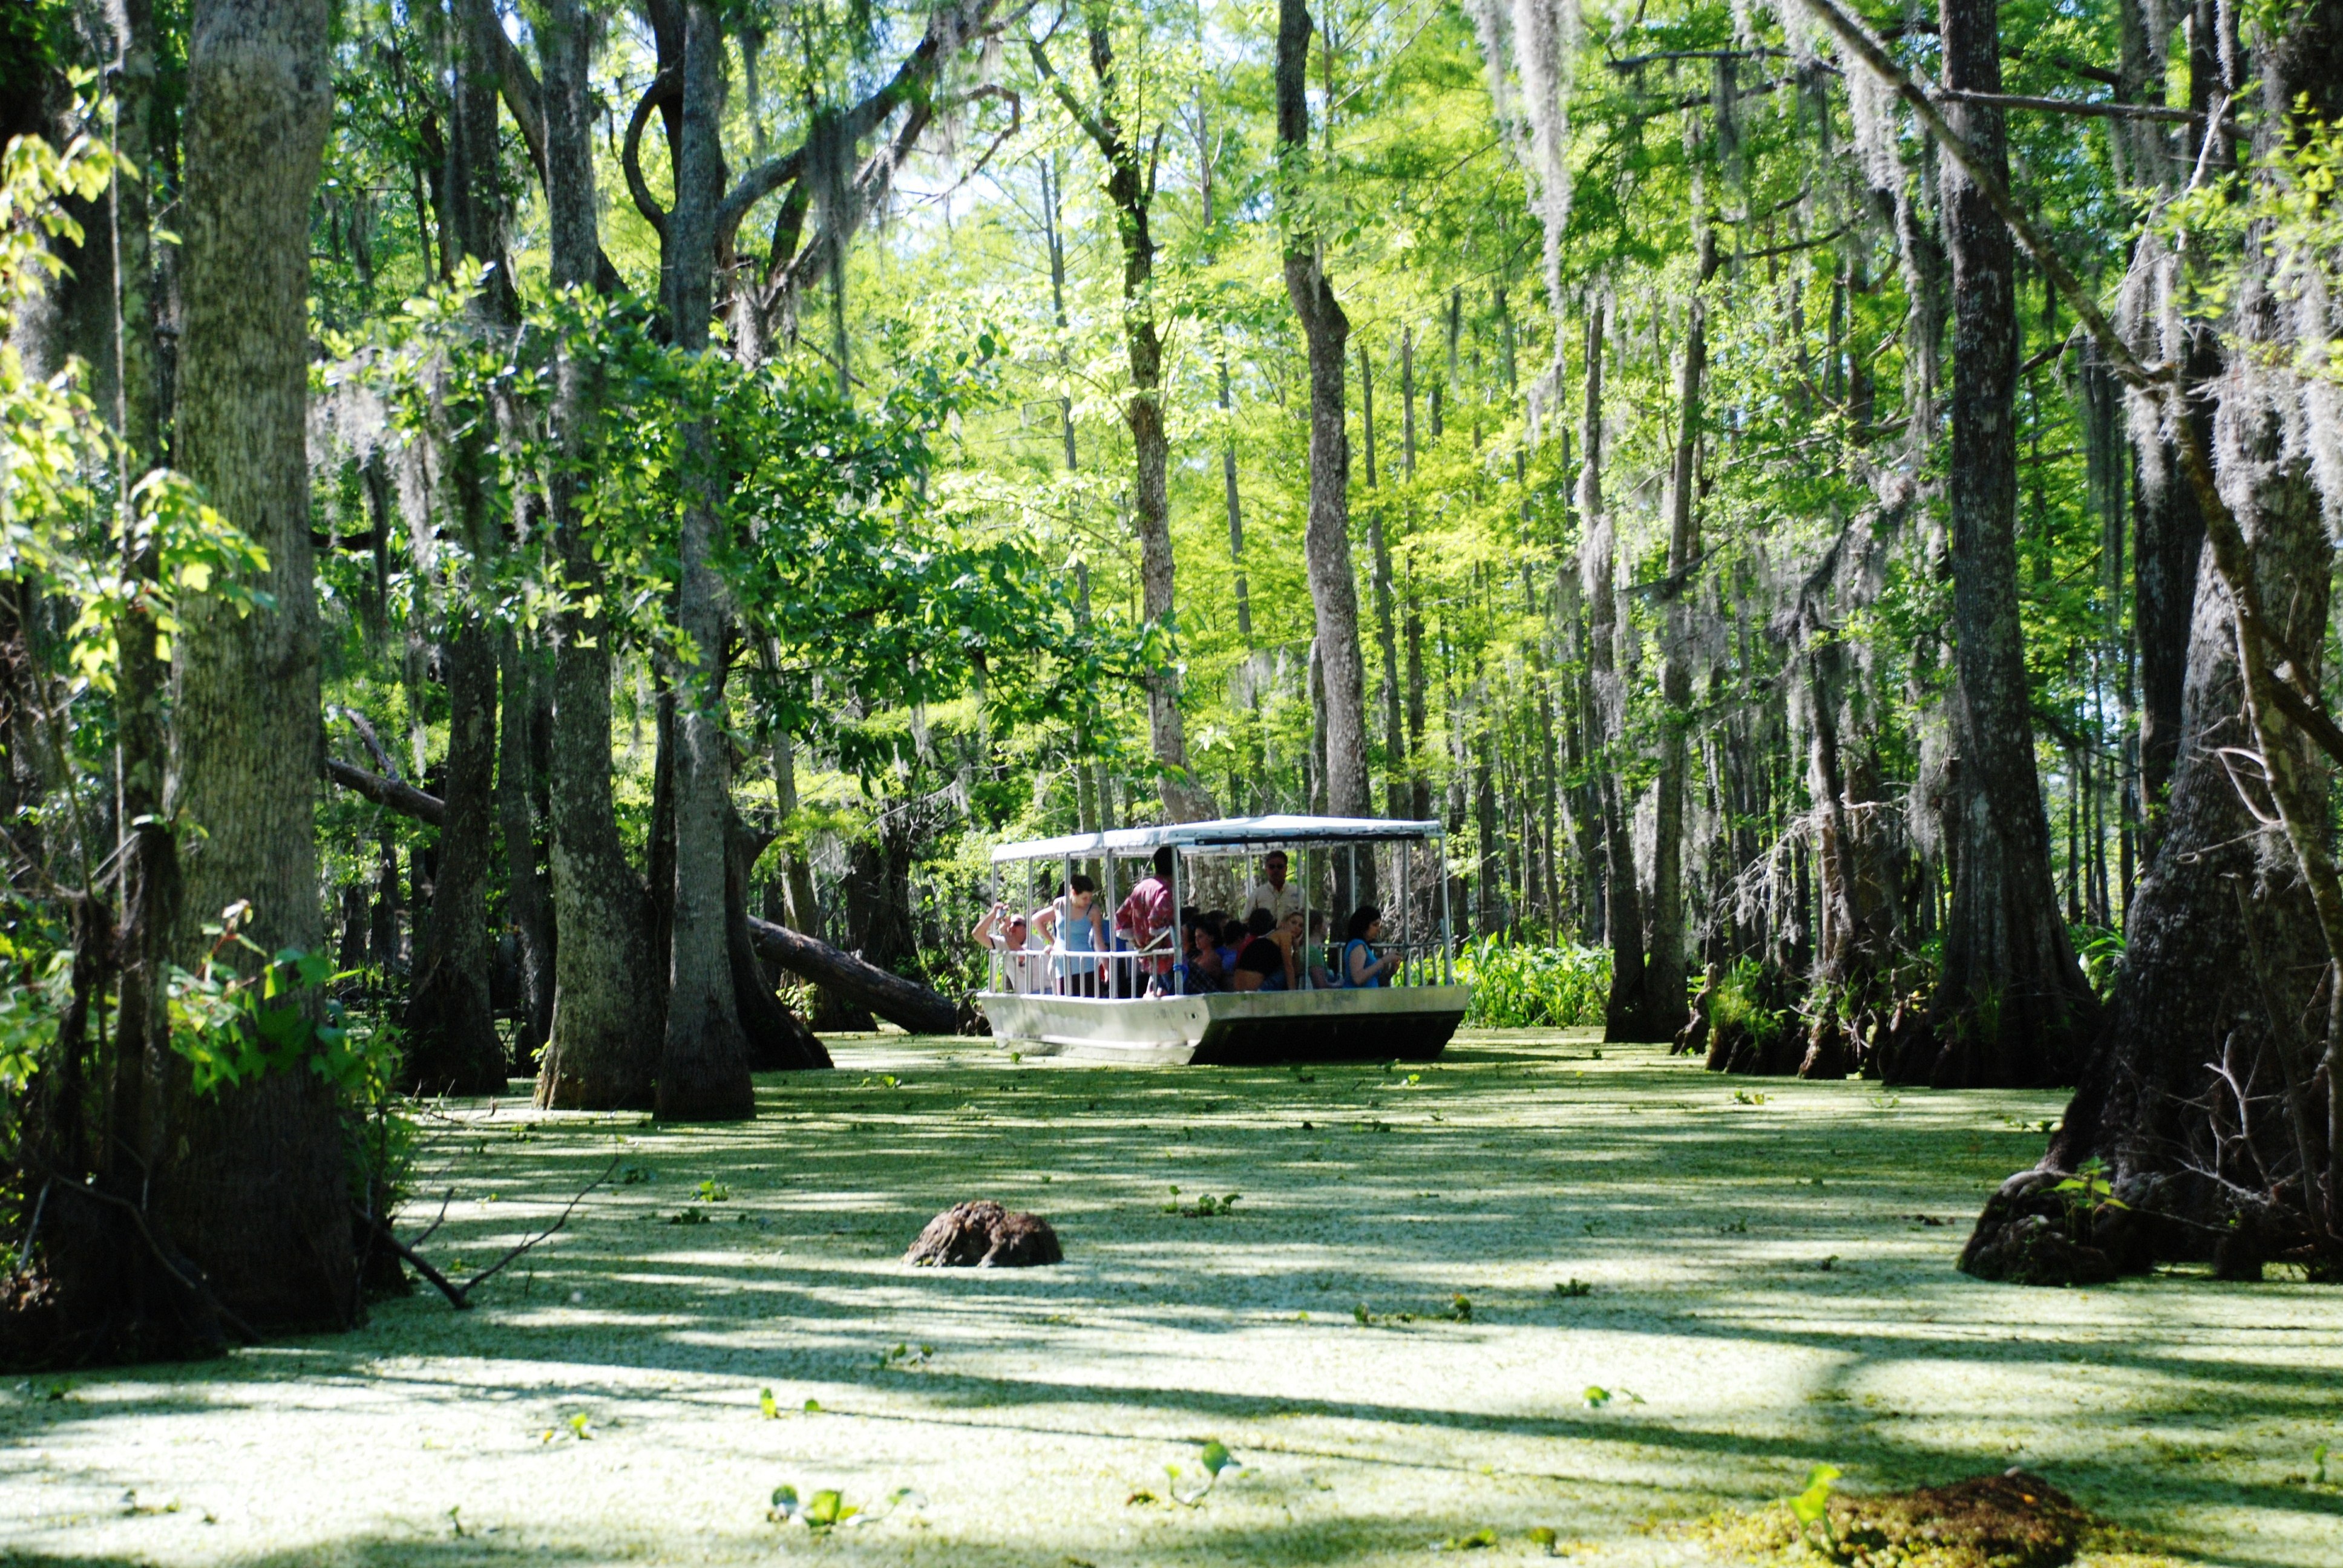 Swamp photo